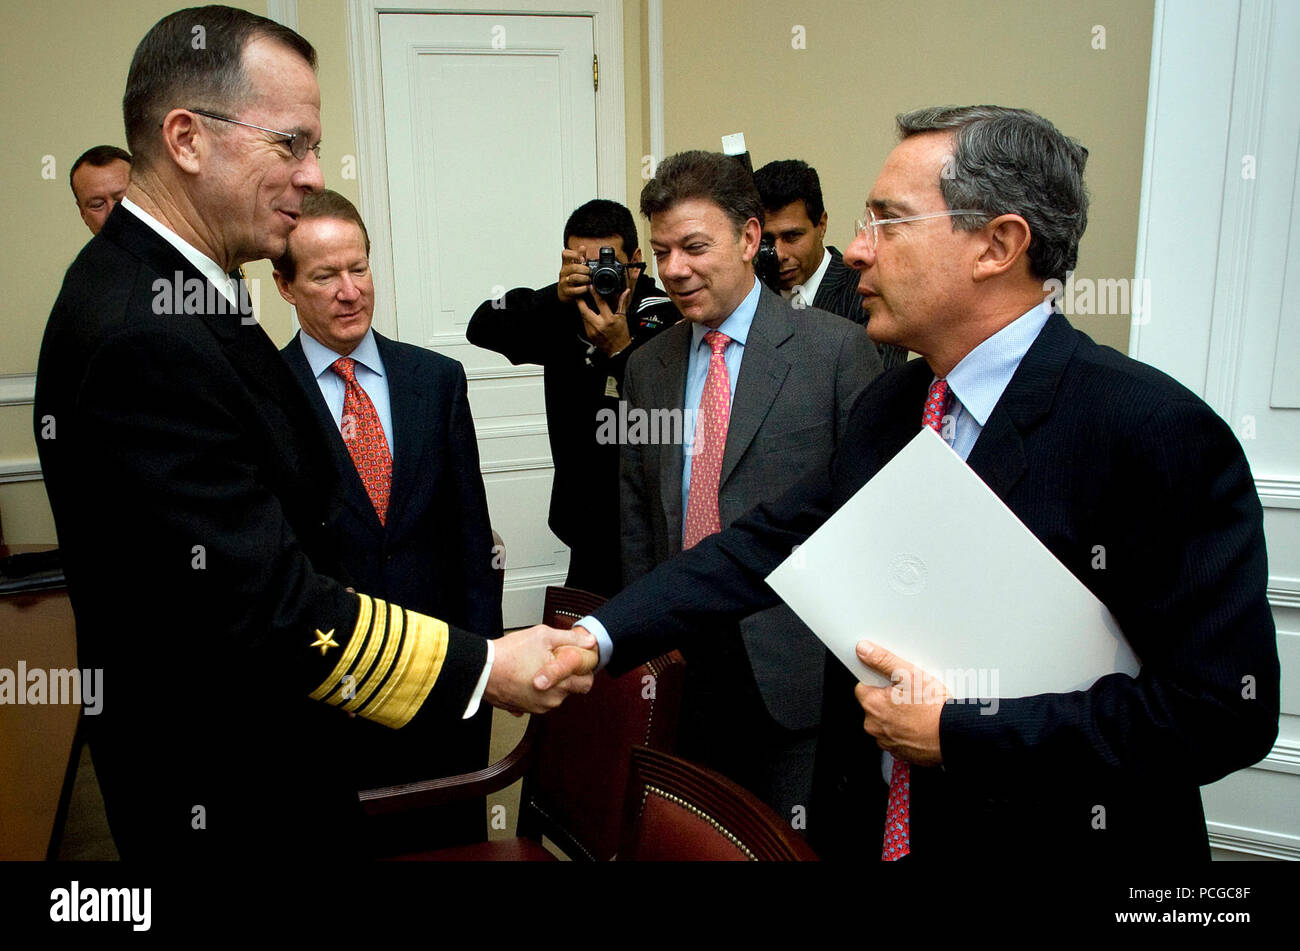 Colombie-britannique (janv. 17, 2008) - U.S. Navy Adm. Mike Mullen, chef d'état-major interarmées ainsi que l'honorable William Brownfield, Ambassadeur des États-Unis en Colombie-Britannique, et le Dr Juan Manuel Santos, ministre colombien de la défense colombienne salue le Président Dr Alvaro Uribe Velez au palais présidentiel à Bogota, Colombie, Jan 17, 2007. Mullen est la clôture d'un voyage de cinq jours à la U.S. Southern Command zone des opérations et un dernier arrêt à San Salvador, El Salvador. Banque D'Images